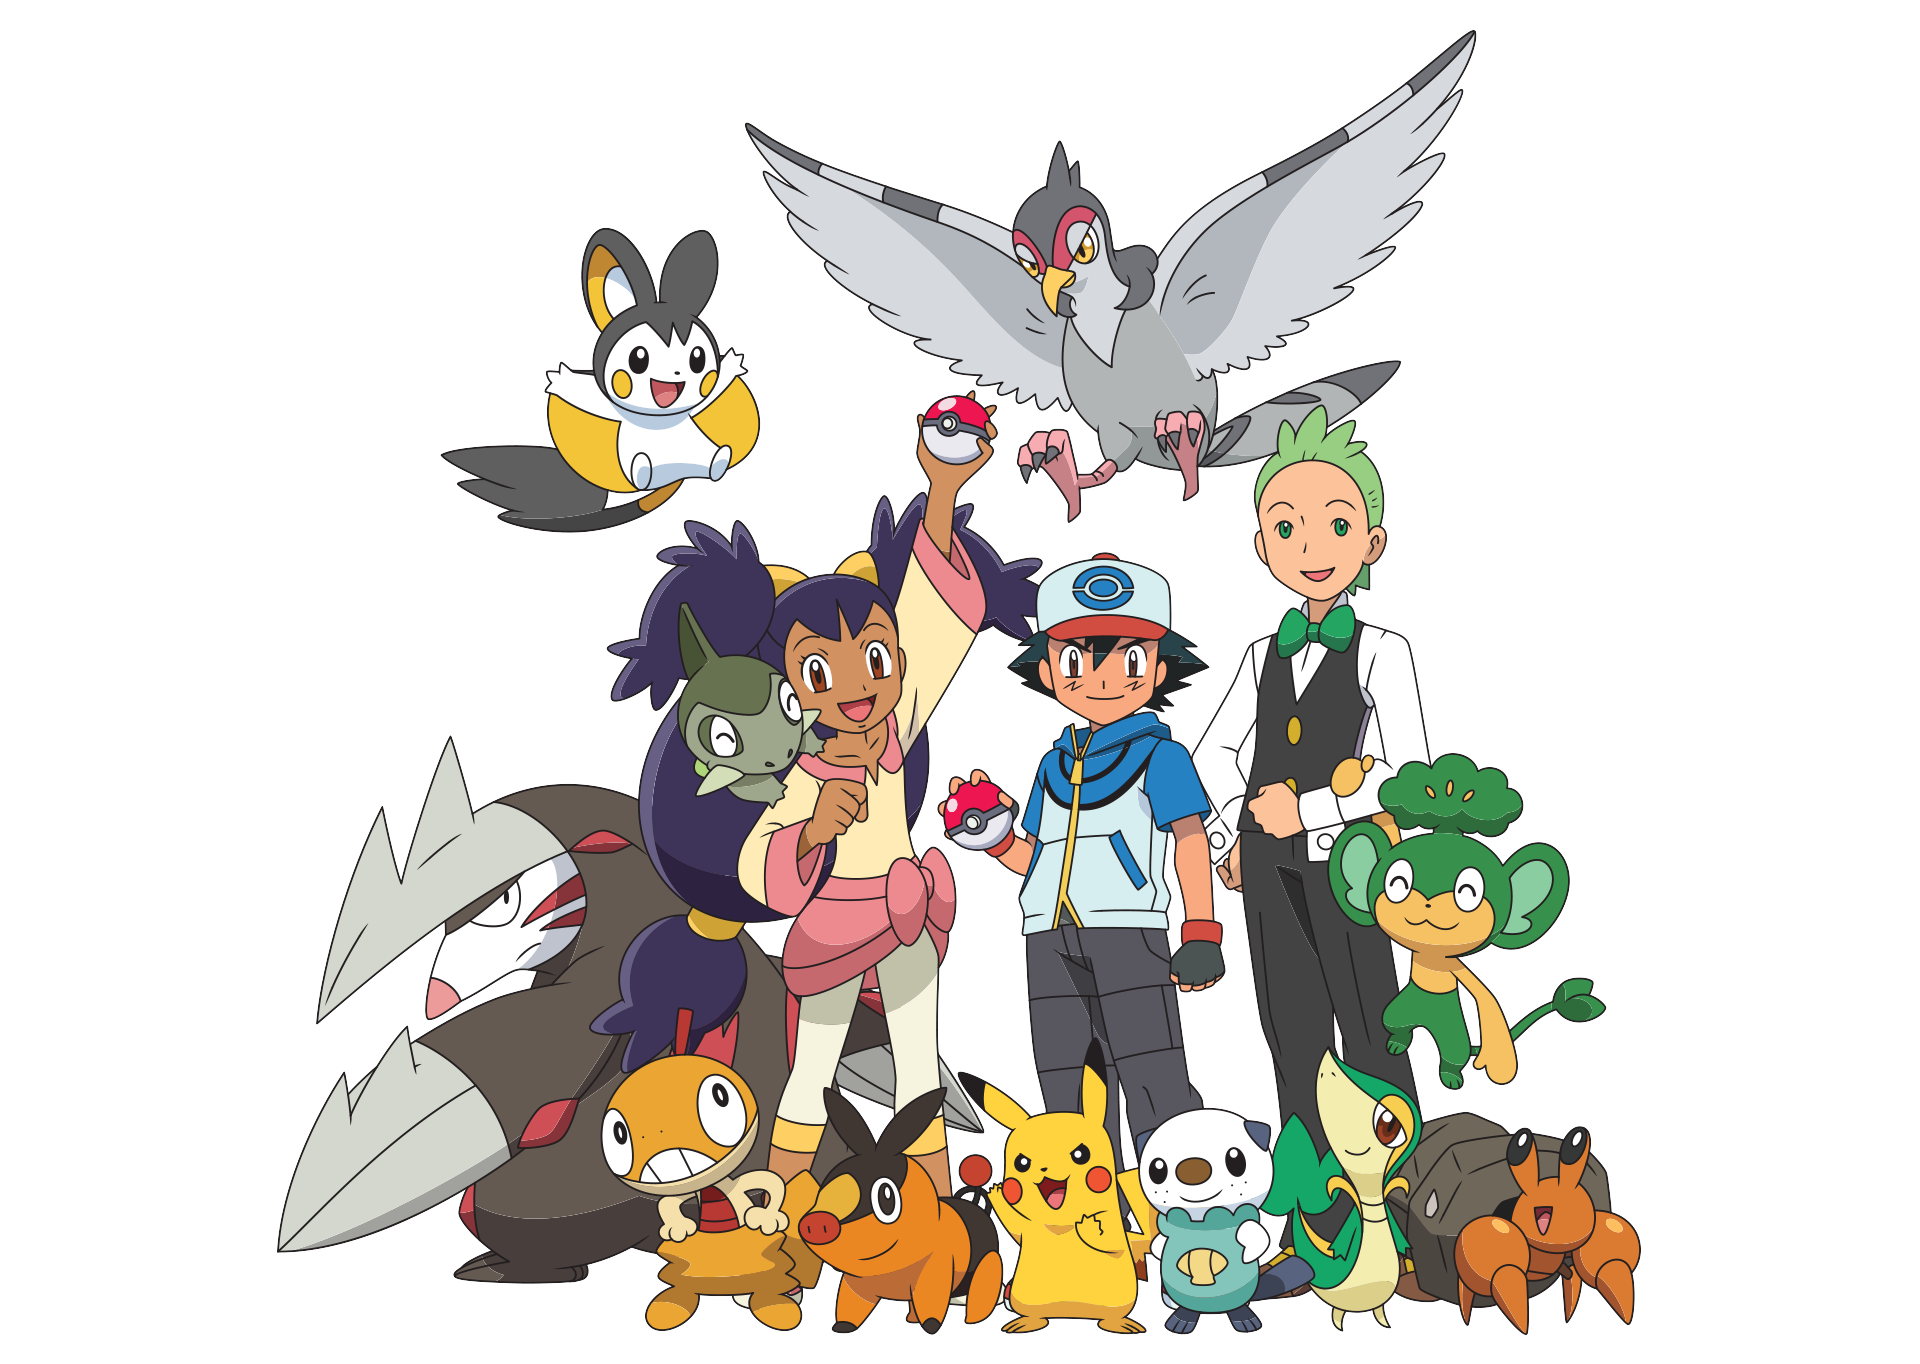 Pokémon the Series: Black & White, Pokémon Wiki